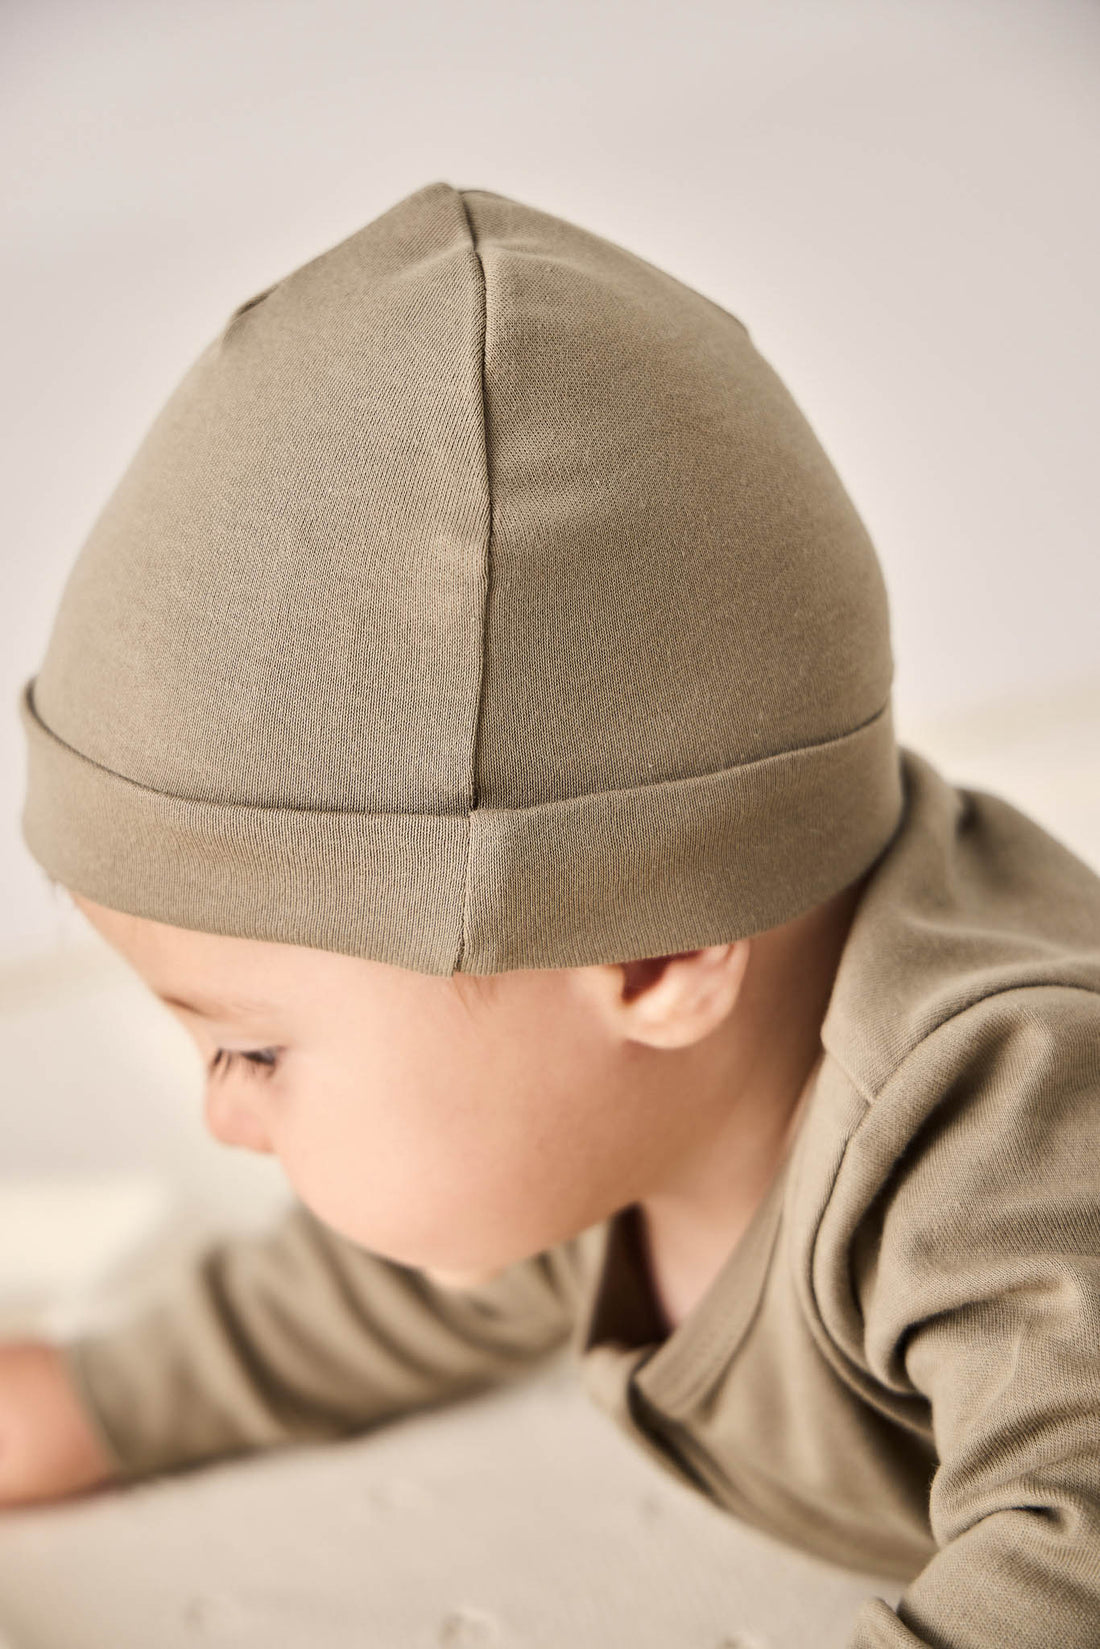 Pima Cotton Marley Beanie - Vert Childrens Hat from Jamie Kay NZ